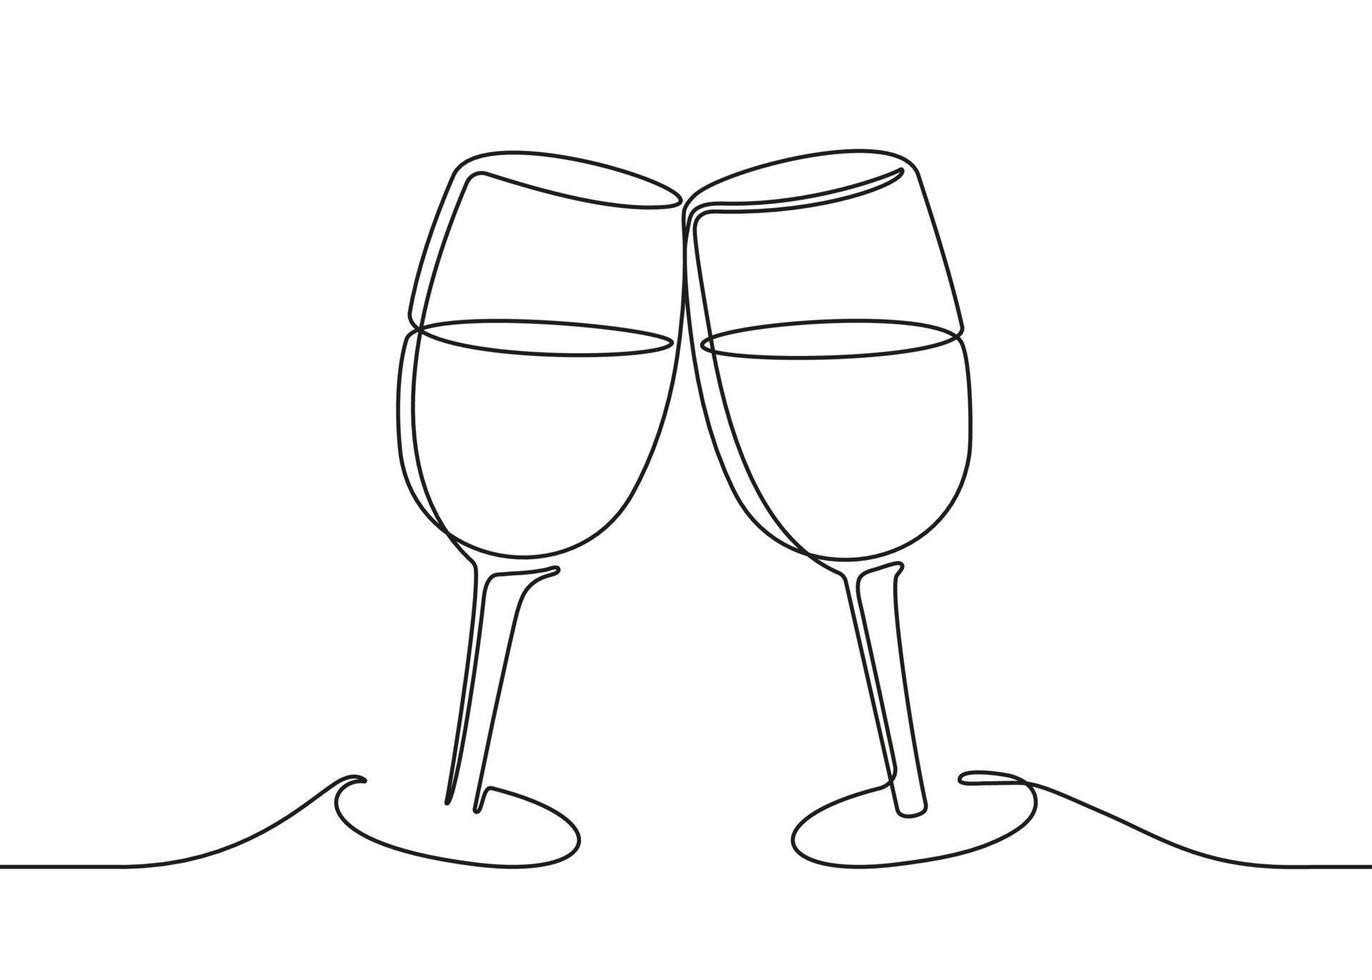 deux verres à vin tintent, dessin noir continu d'une ligne. illustration vectorielle vecteur